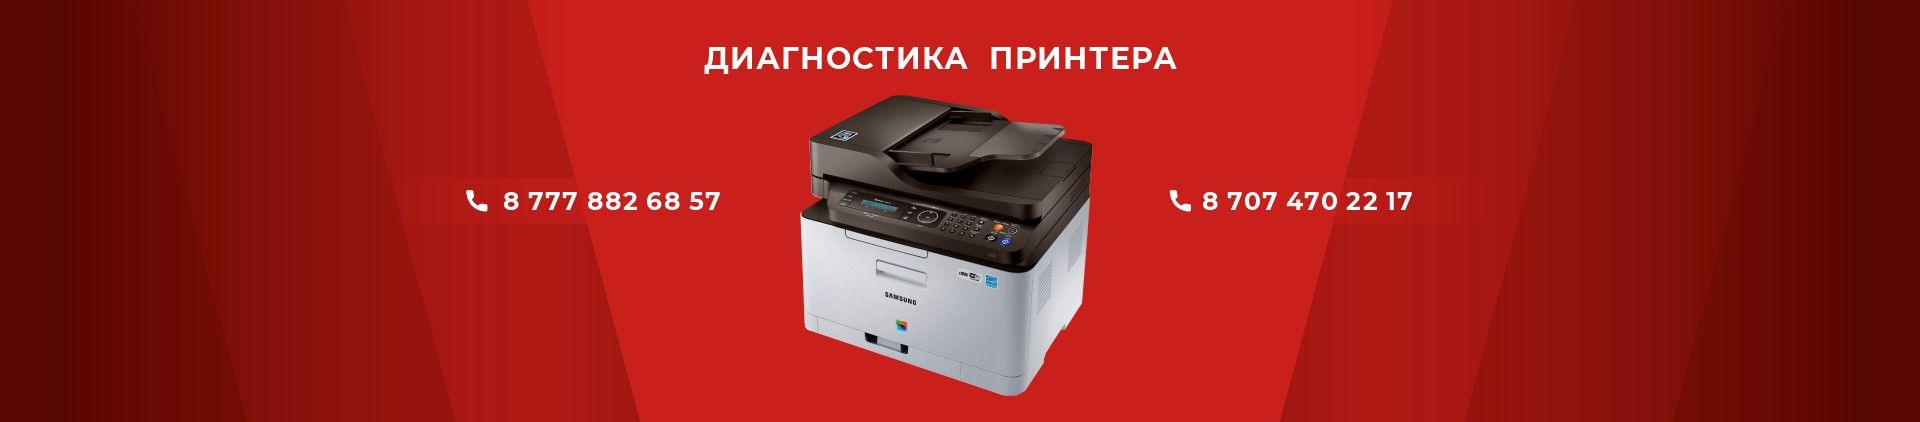 диагностика принтера